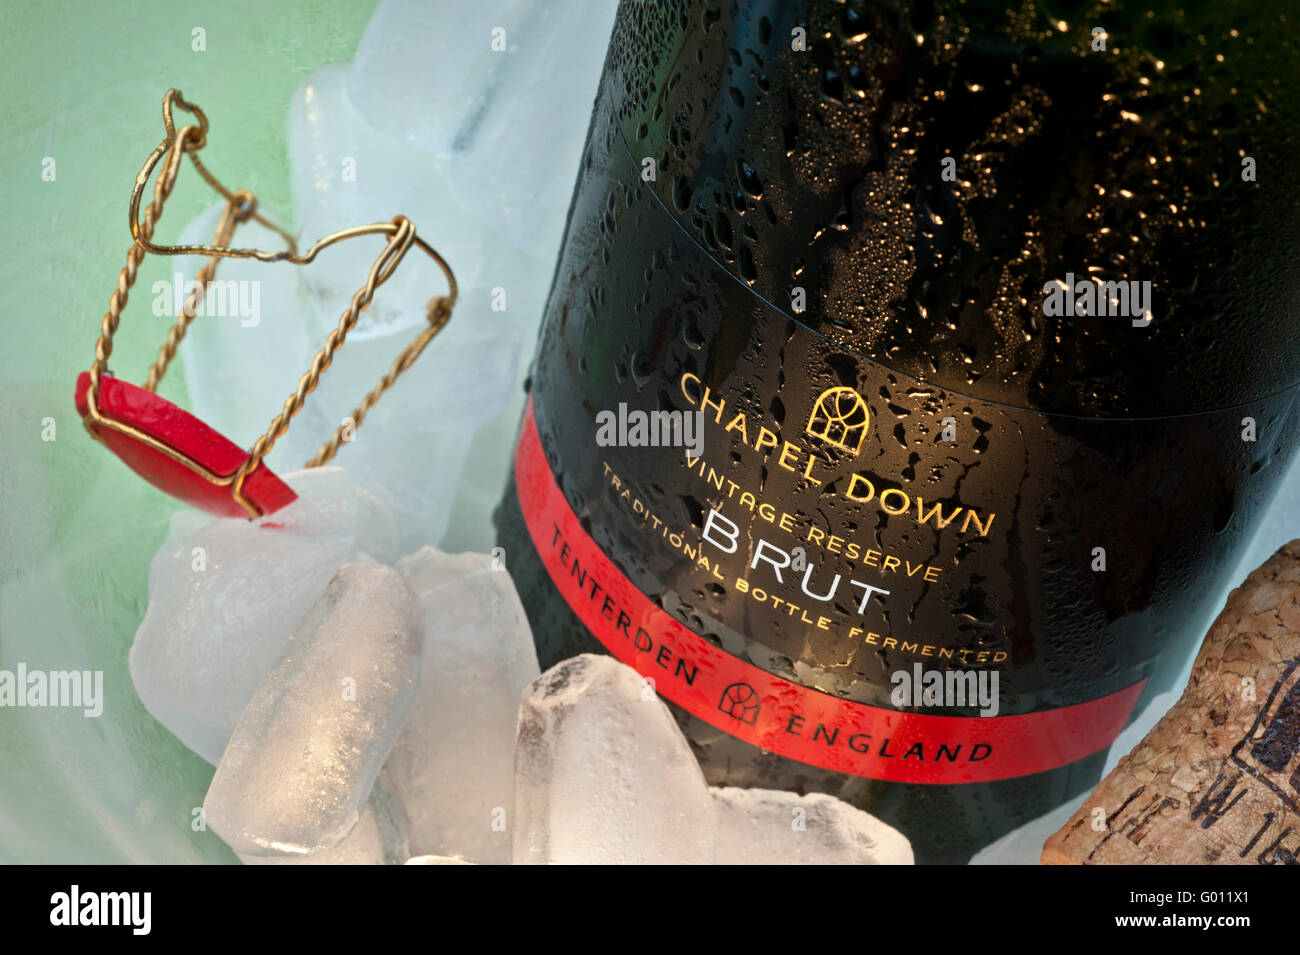 Premiato italiano vino spumante 'Cappella giù Brut" bottiglia su ghiaccio in wine cooler con sughero e il tappo di fissaggio Foto Stock